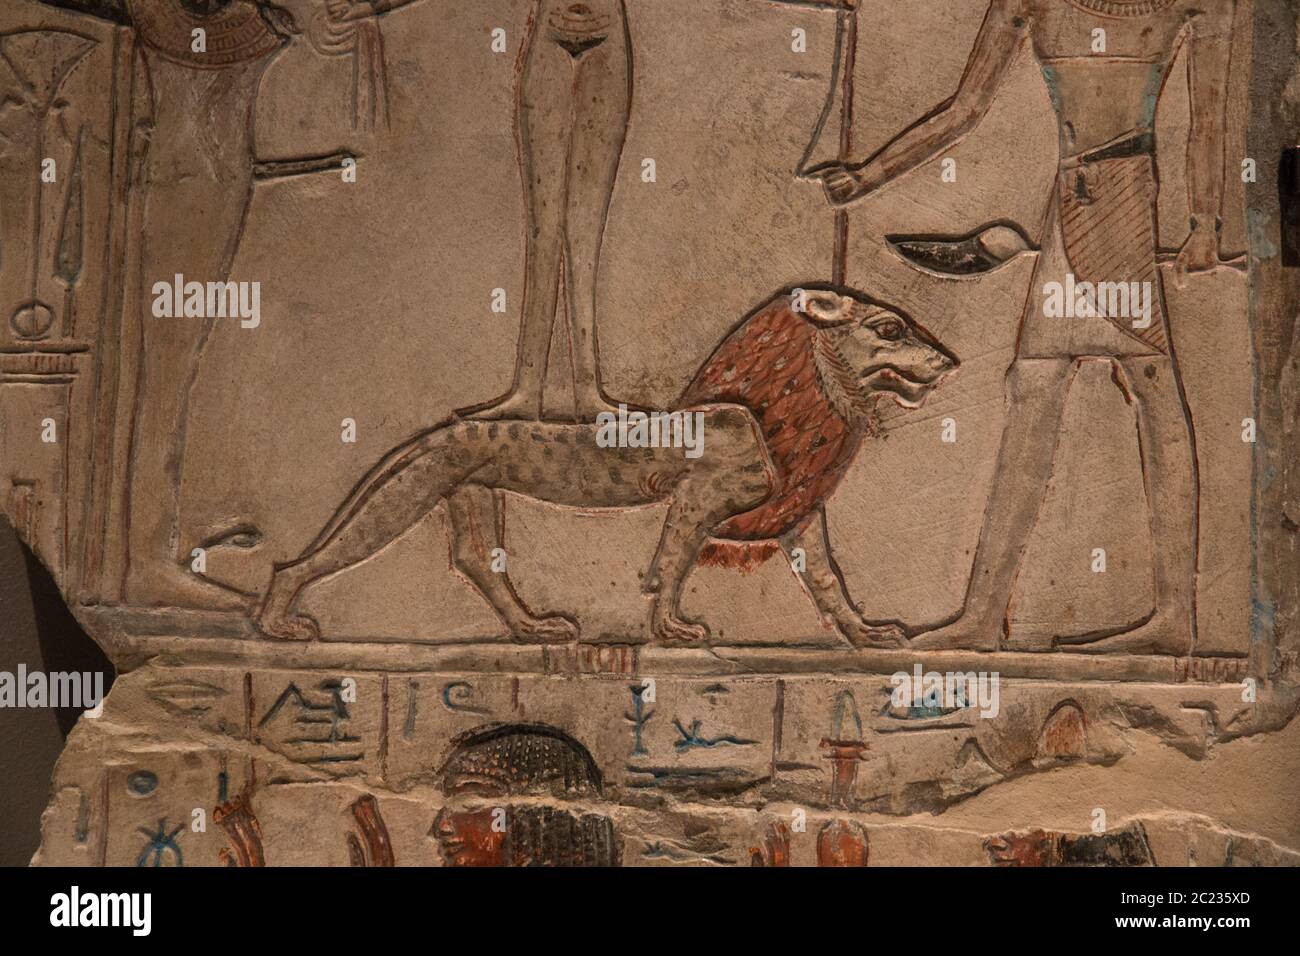 Leiden, pays-Bas - 26 JANVIER 2019 : hiéroglyphes à proximité d'une stela avec un lion de l'Égypte ancienne. Banque D'Images